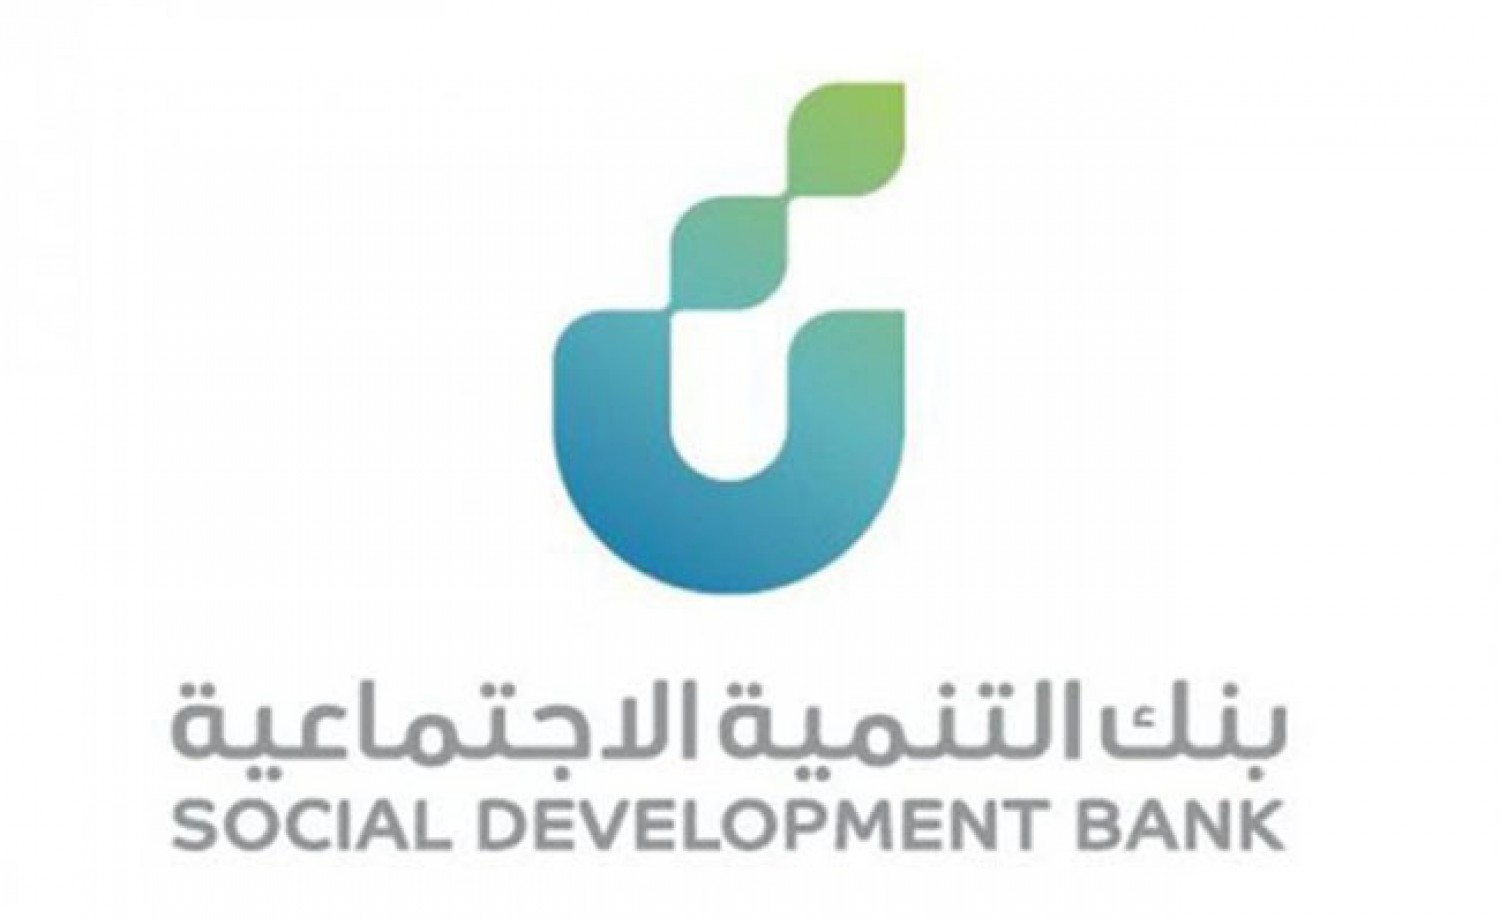 قروض بنك التنمية الاجتماعية | شروط بنك التسليف لبرامج التمويل الاجتماعي 1442